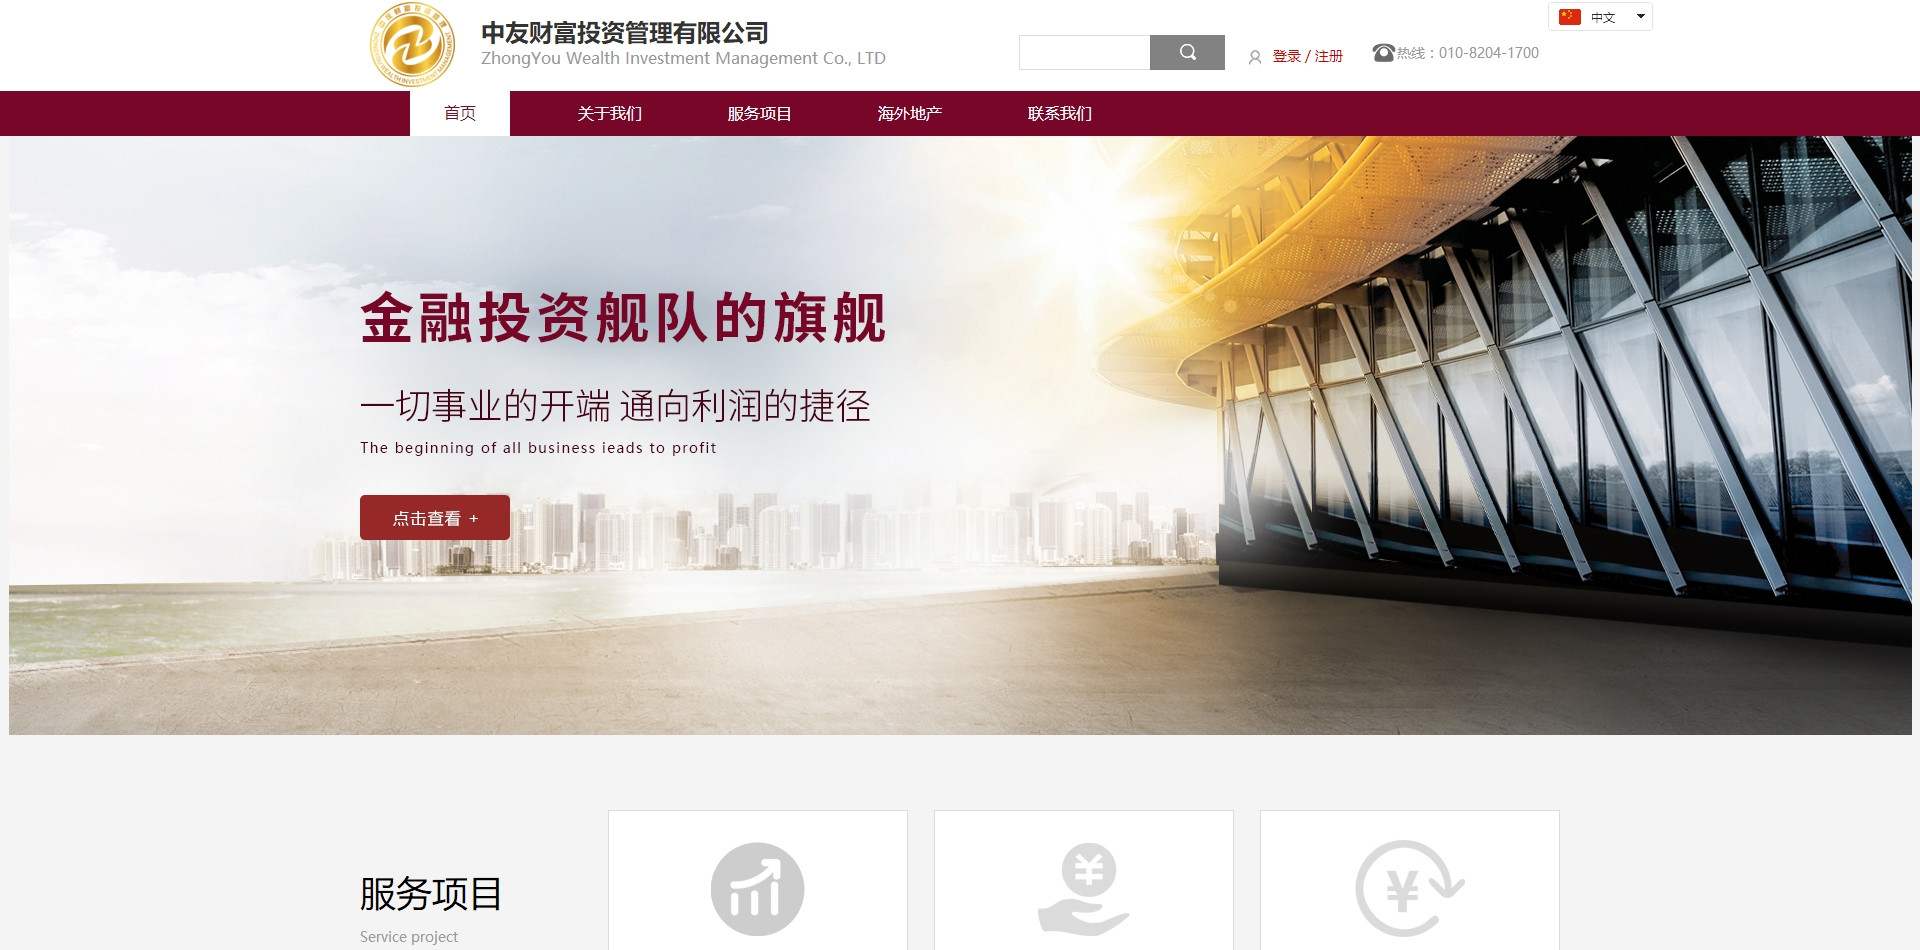 西安网站建设-北京中友财富投资管理有限公司